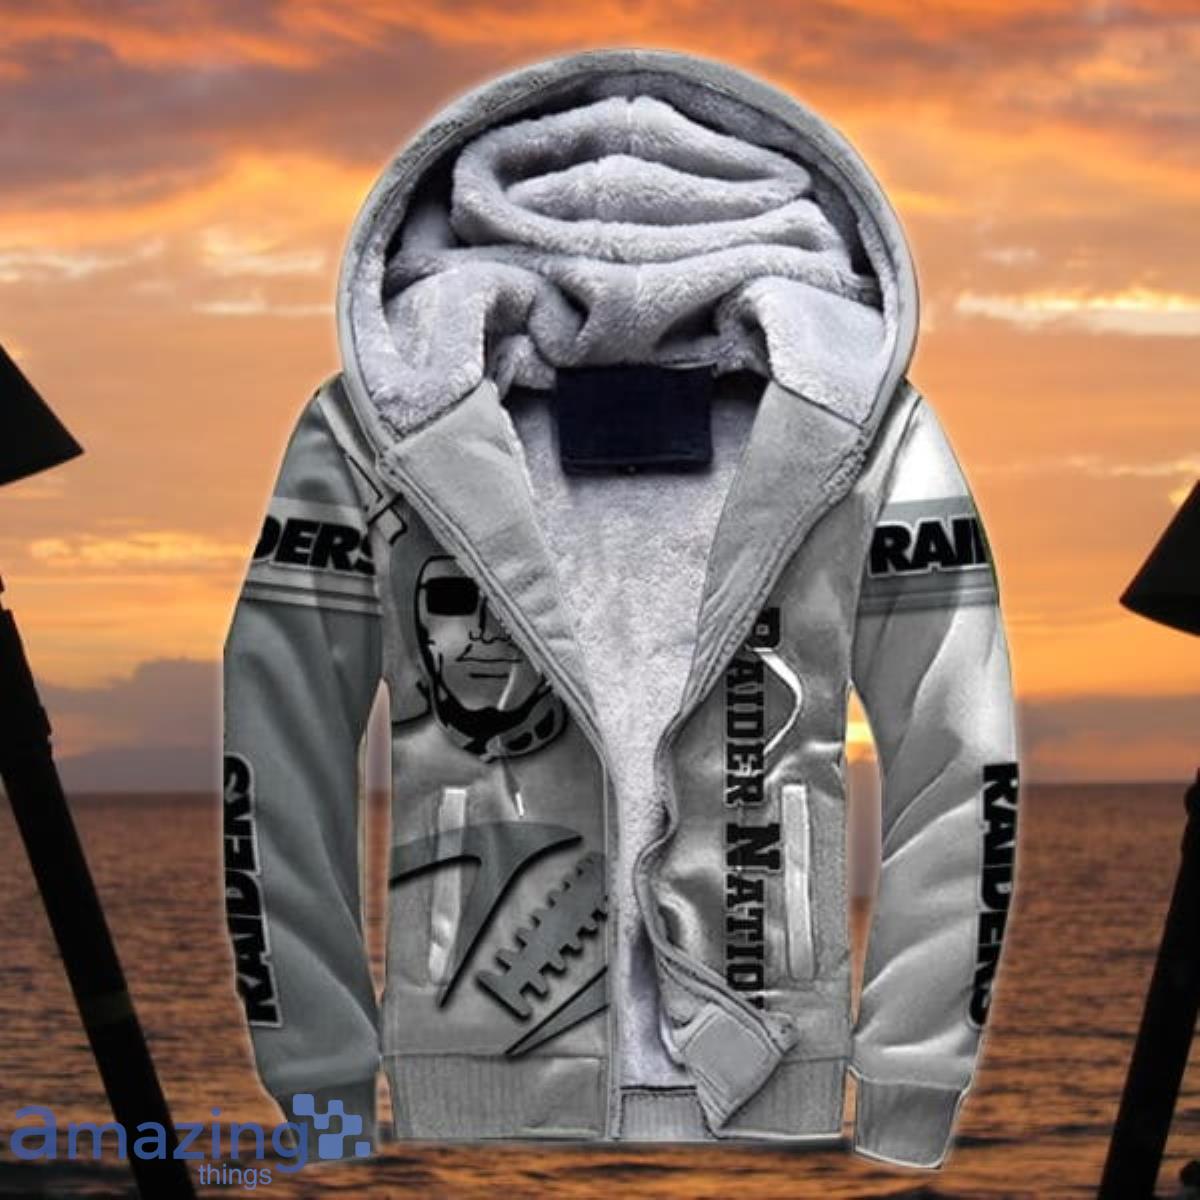 Las Vegas Raiders Hoodies Men's Casual Jacket Hooded Sweatshirts  Sports Pullover